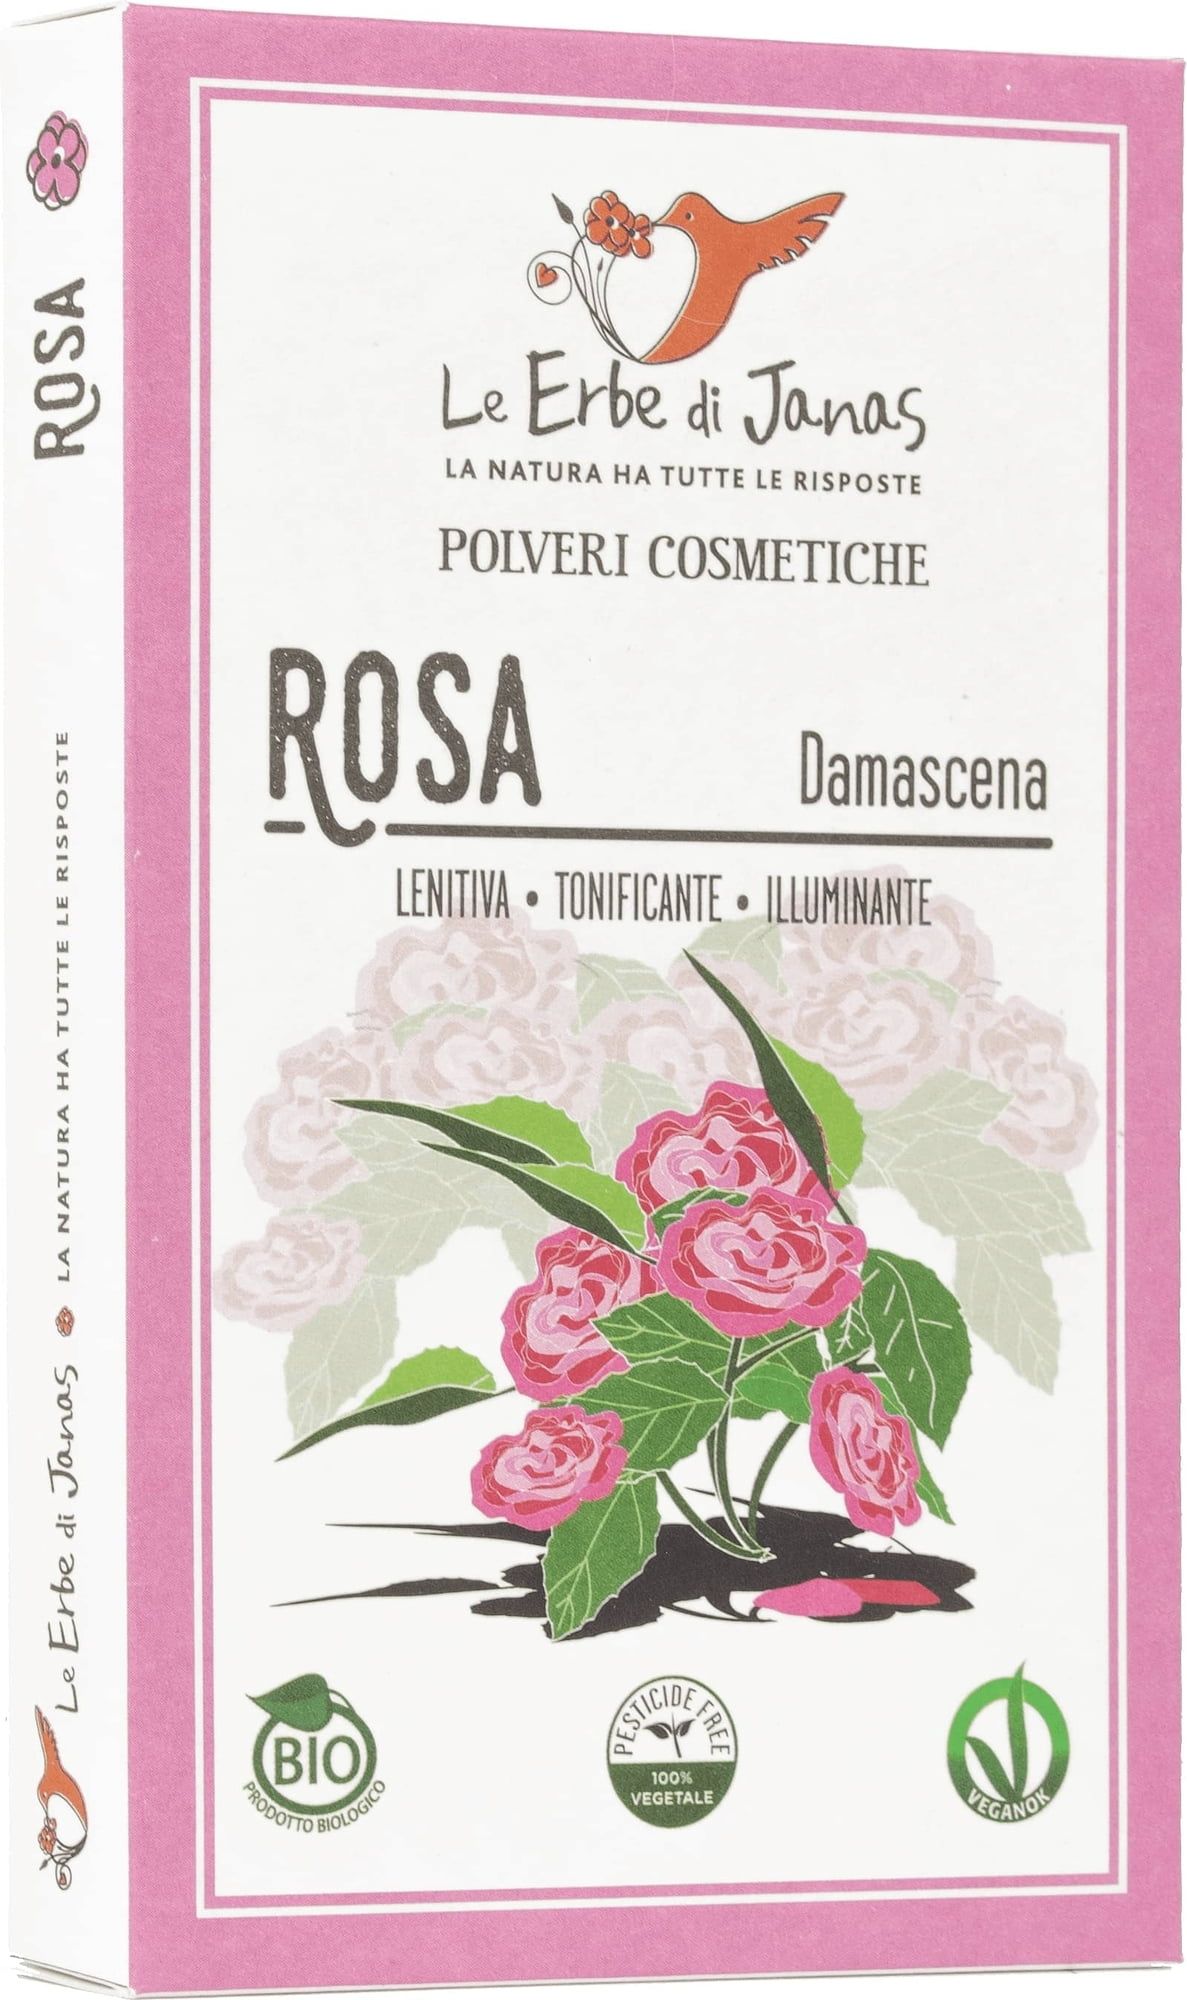 Le Erbe di Janas Rose de Damas - 100 g